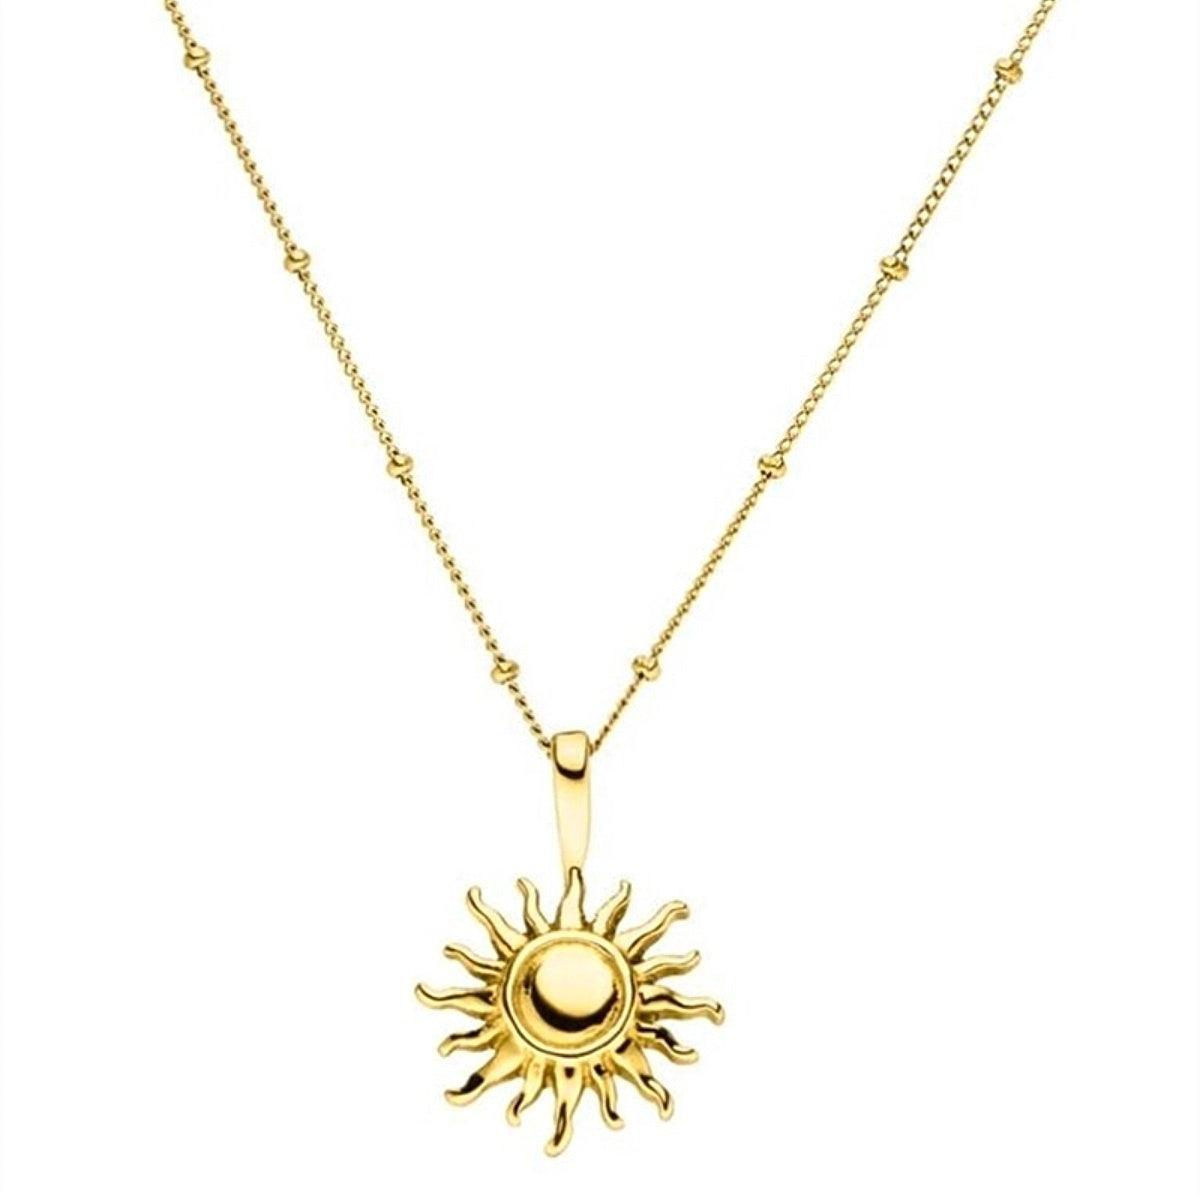 Lymaja Sonnen Halskette Gold mit einem Sonnen Anhänger in gold